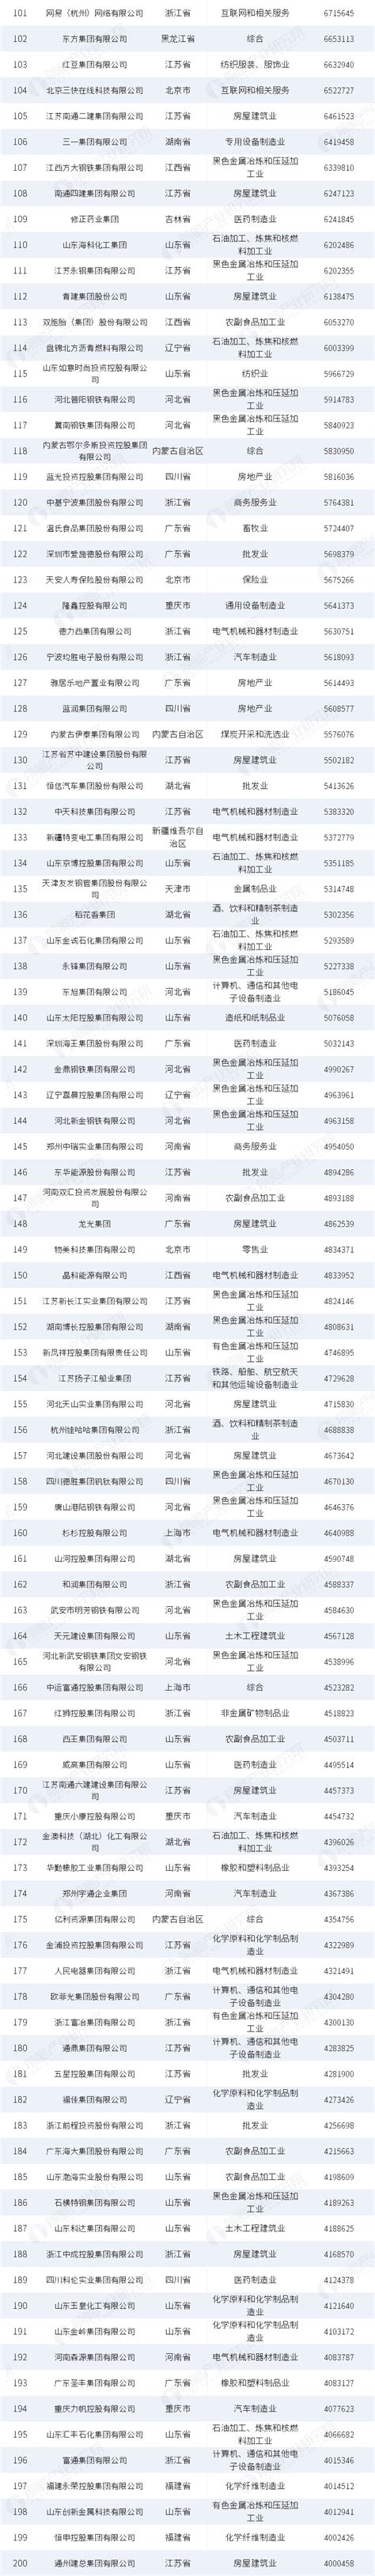 2019中国民营企业500强榜单 - 行业分析 - 机械社区 - 百万机械行业人士网络家园